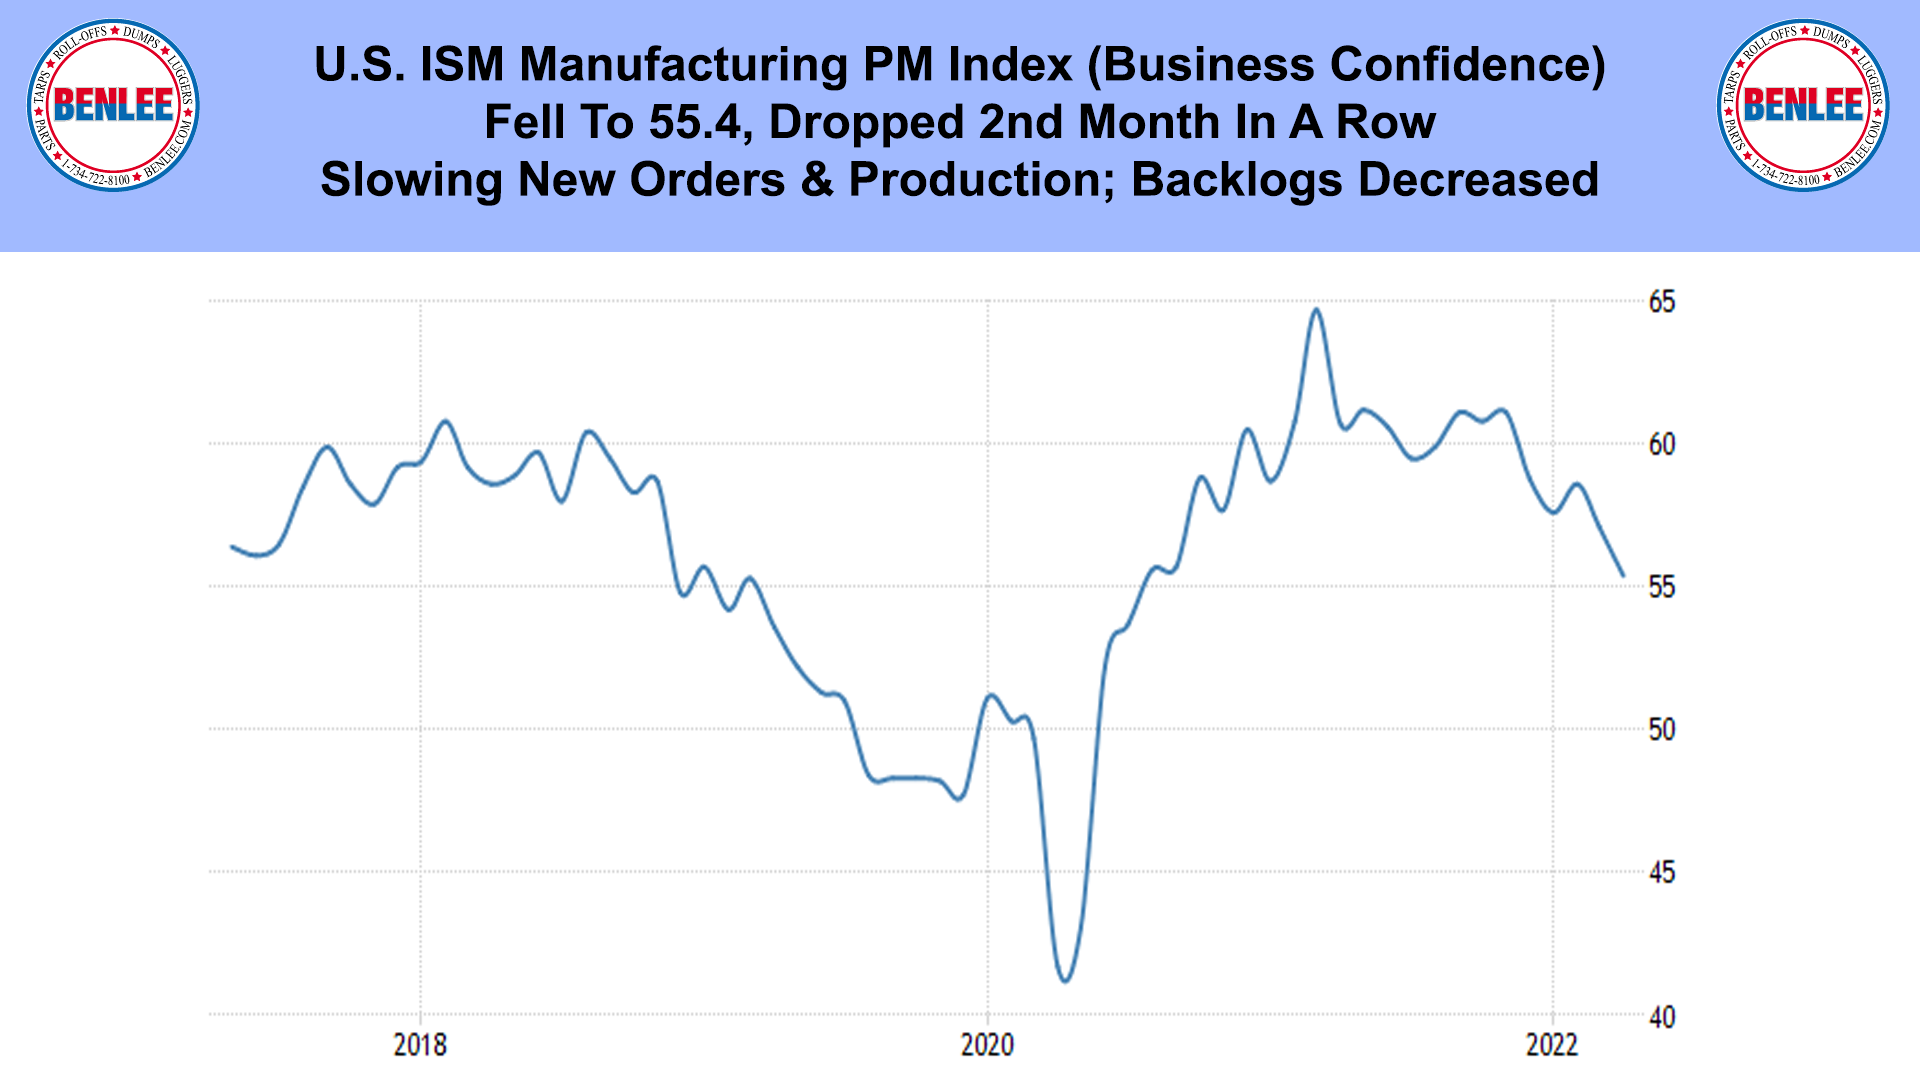 U.S. ISM Manufacturing PM Index